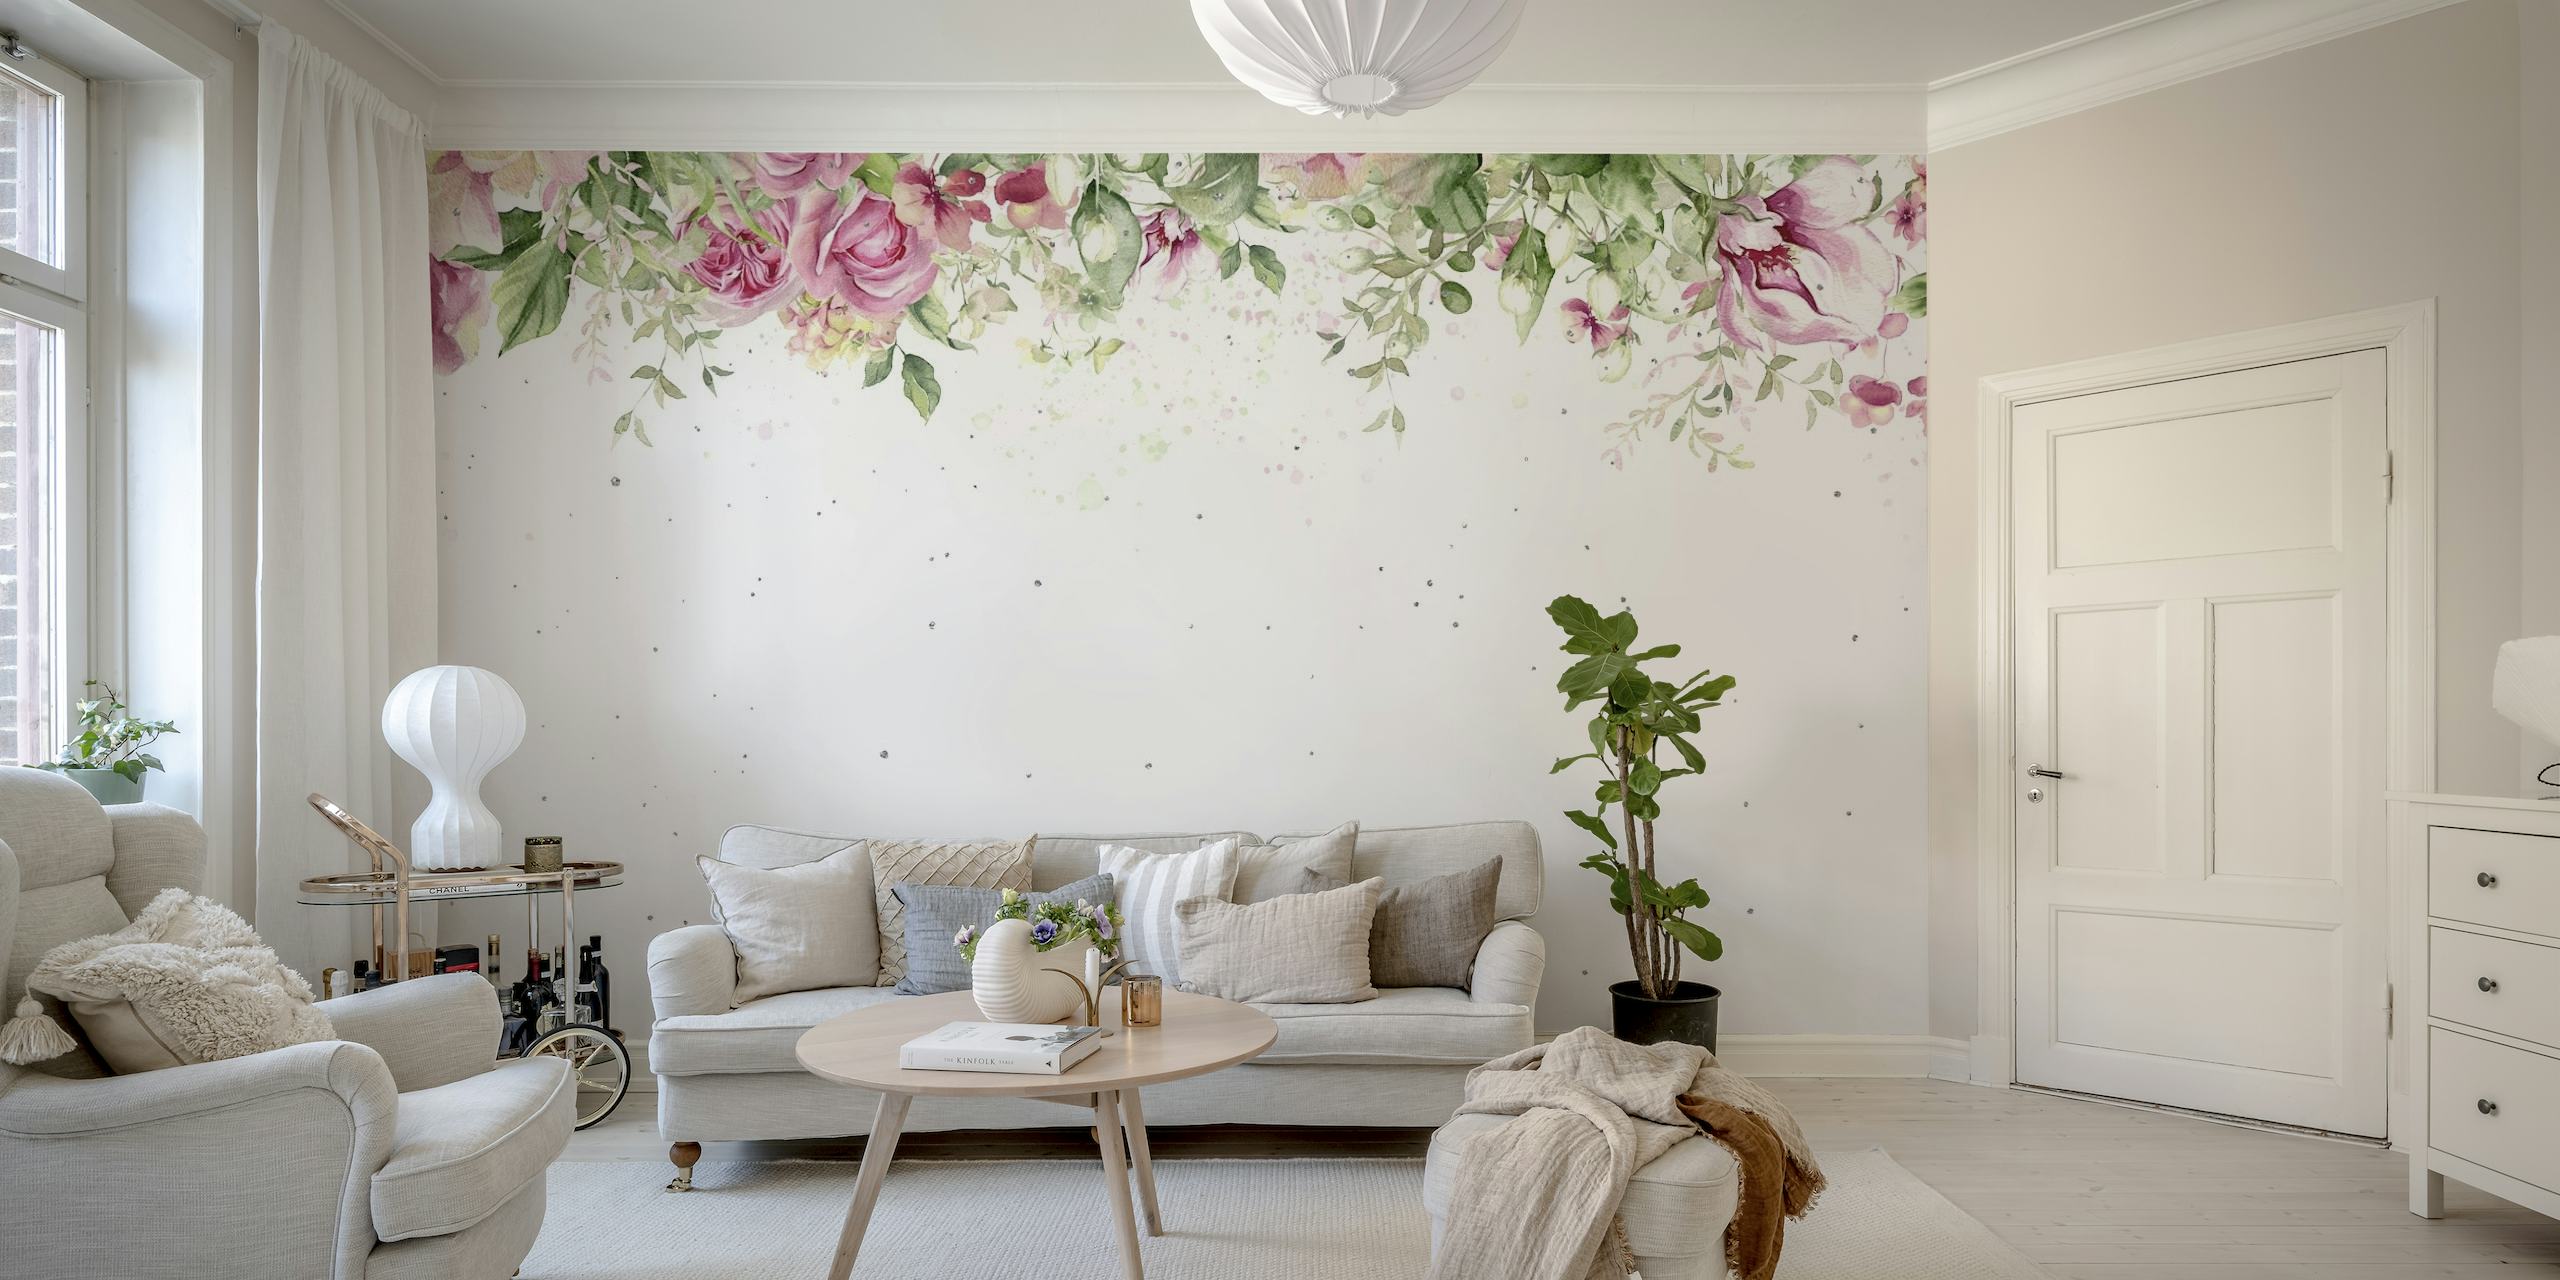 Elegantne ruže u akvarelu i zelenilo stvaraju mirnu gornju granicu na zidnom muralu